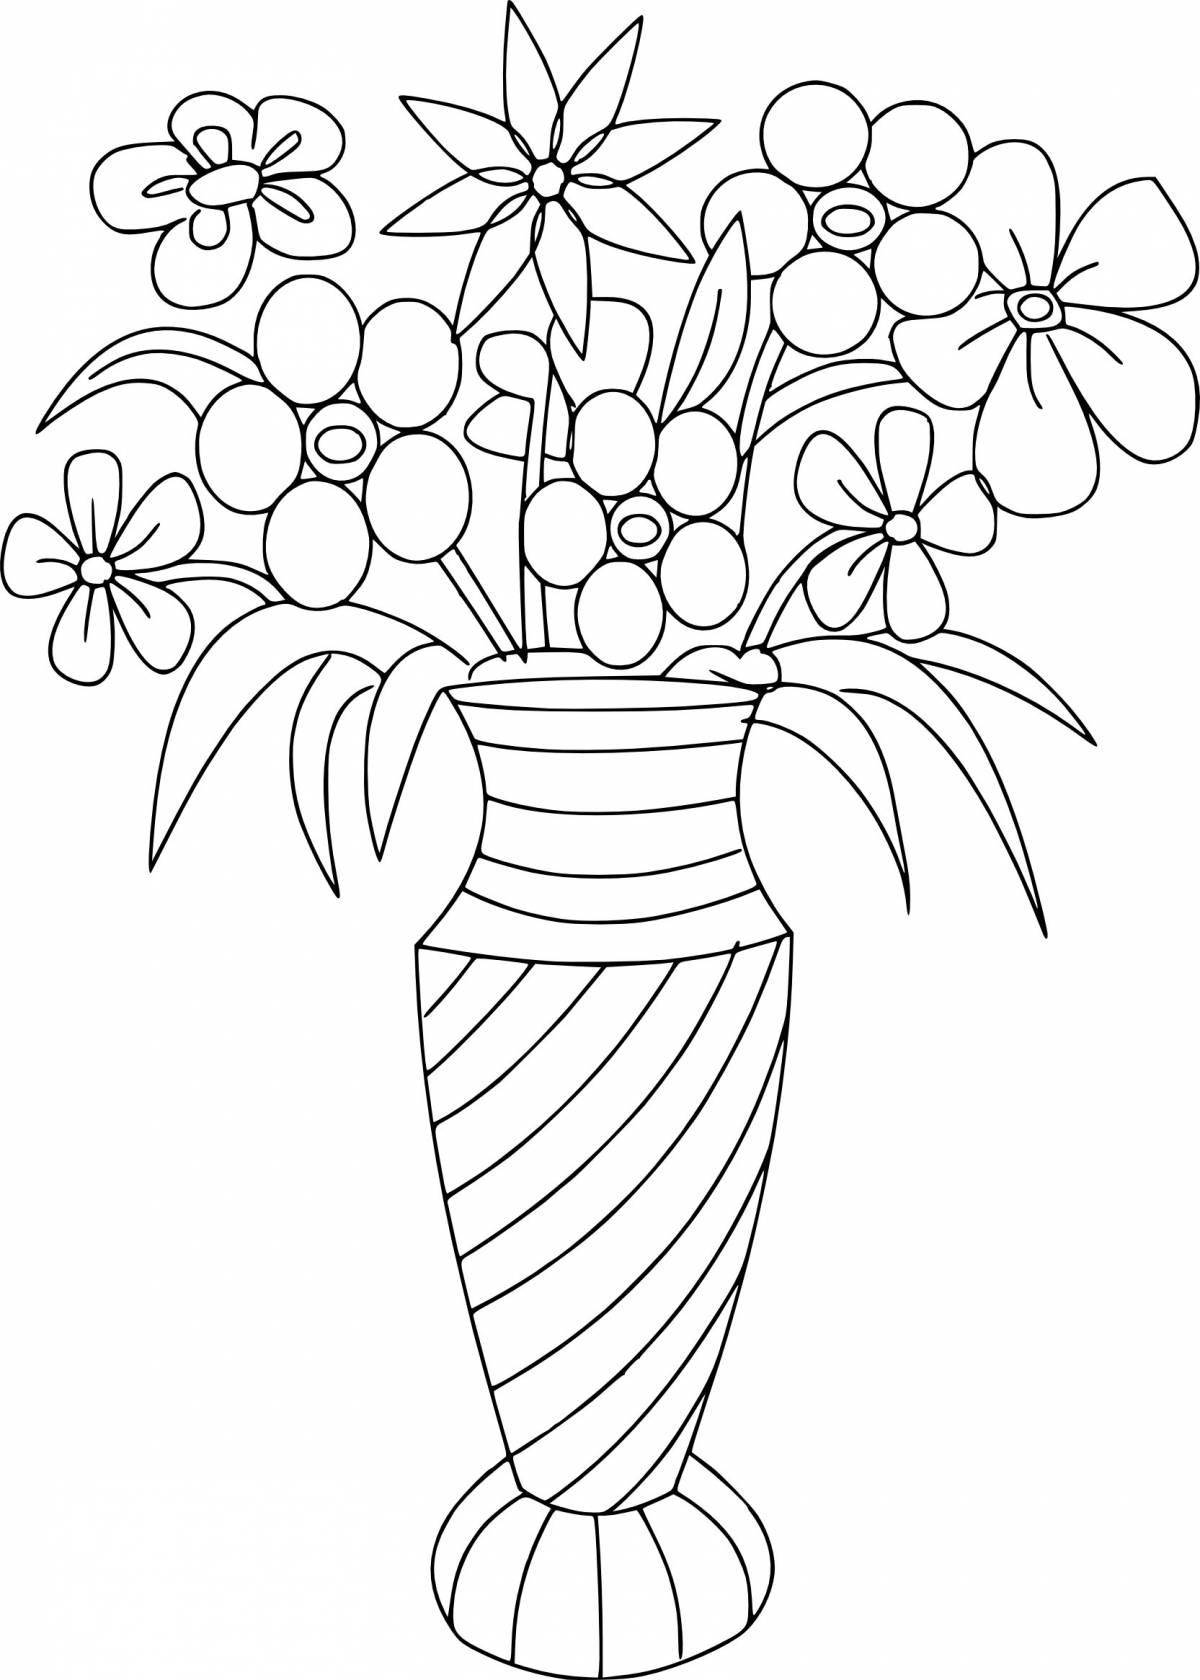 Great coloring flower vase for kids